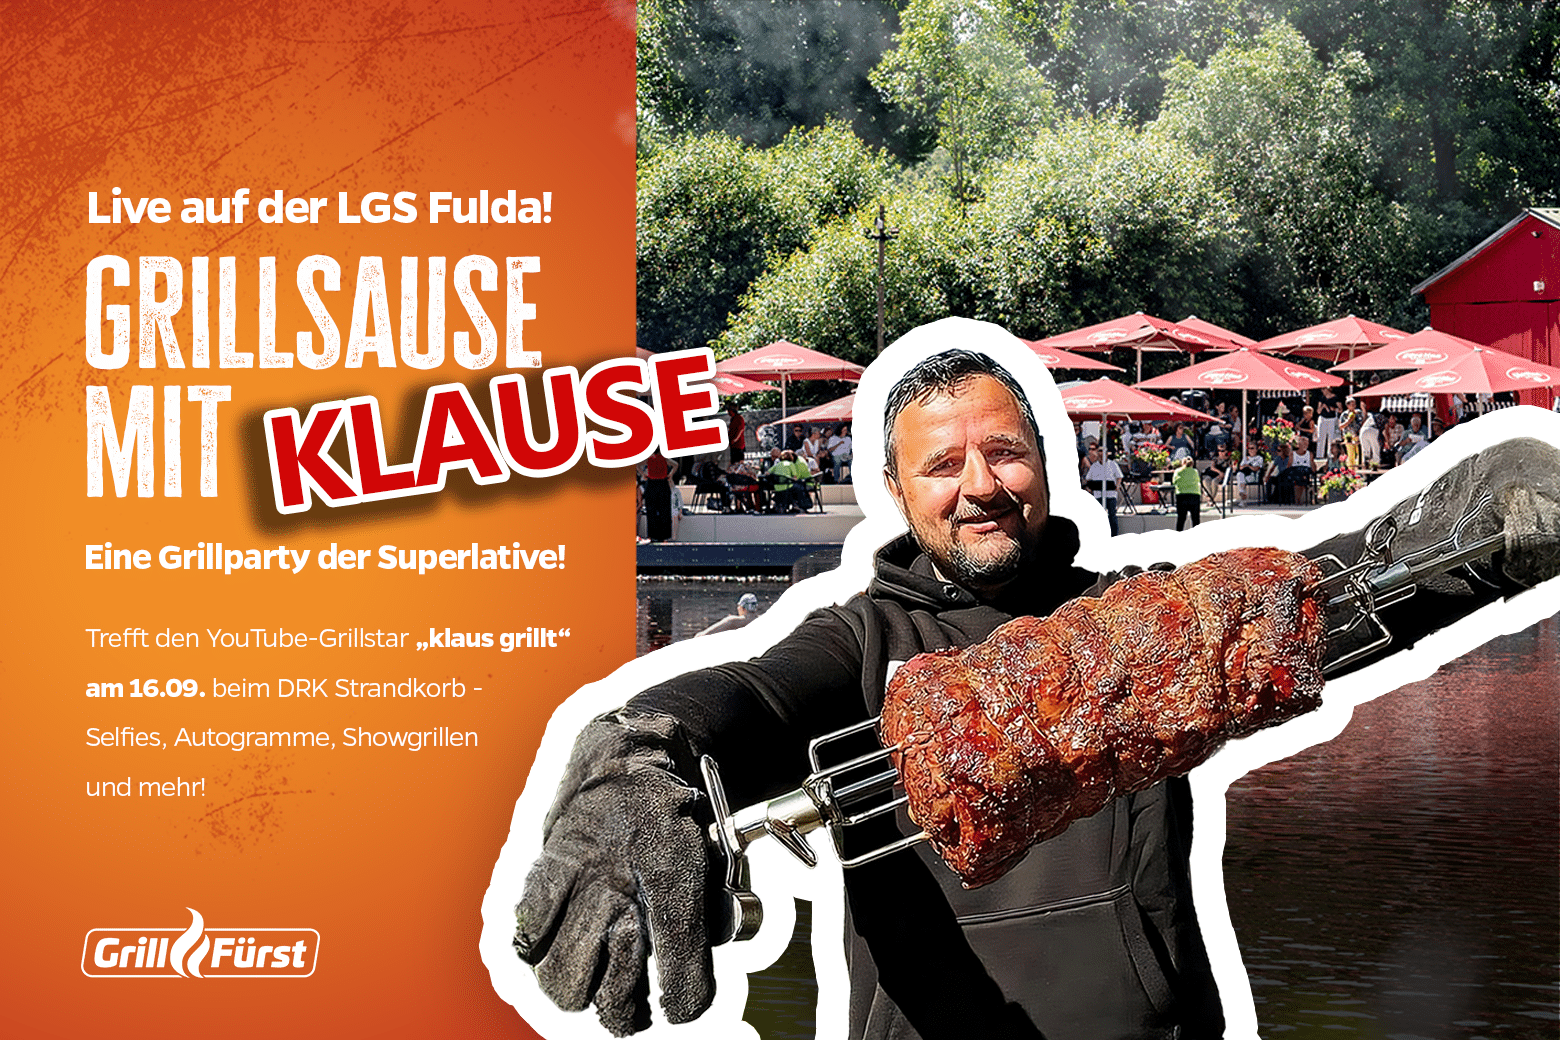 Die XXL Grillsause mit Klause: Erlebe „klaus grillt“ LIVE am 16.09 auf der Landesgartenschau Fulda!